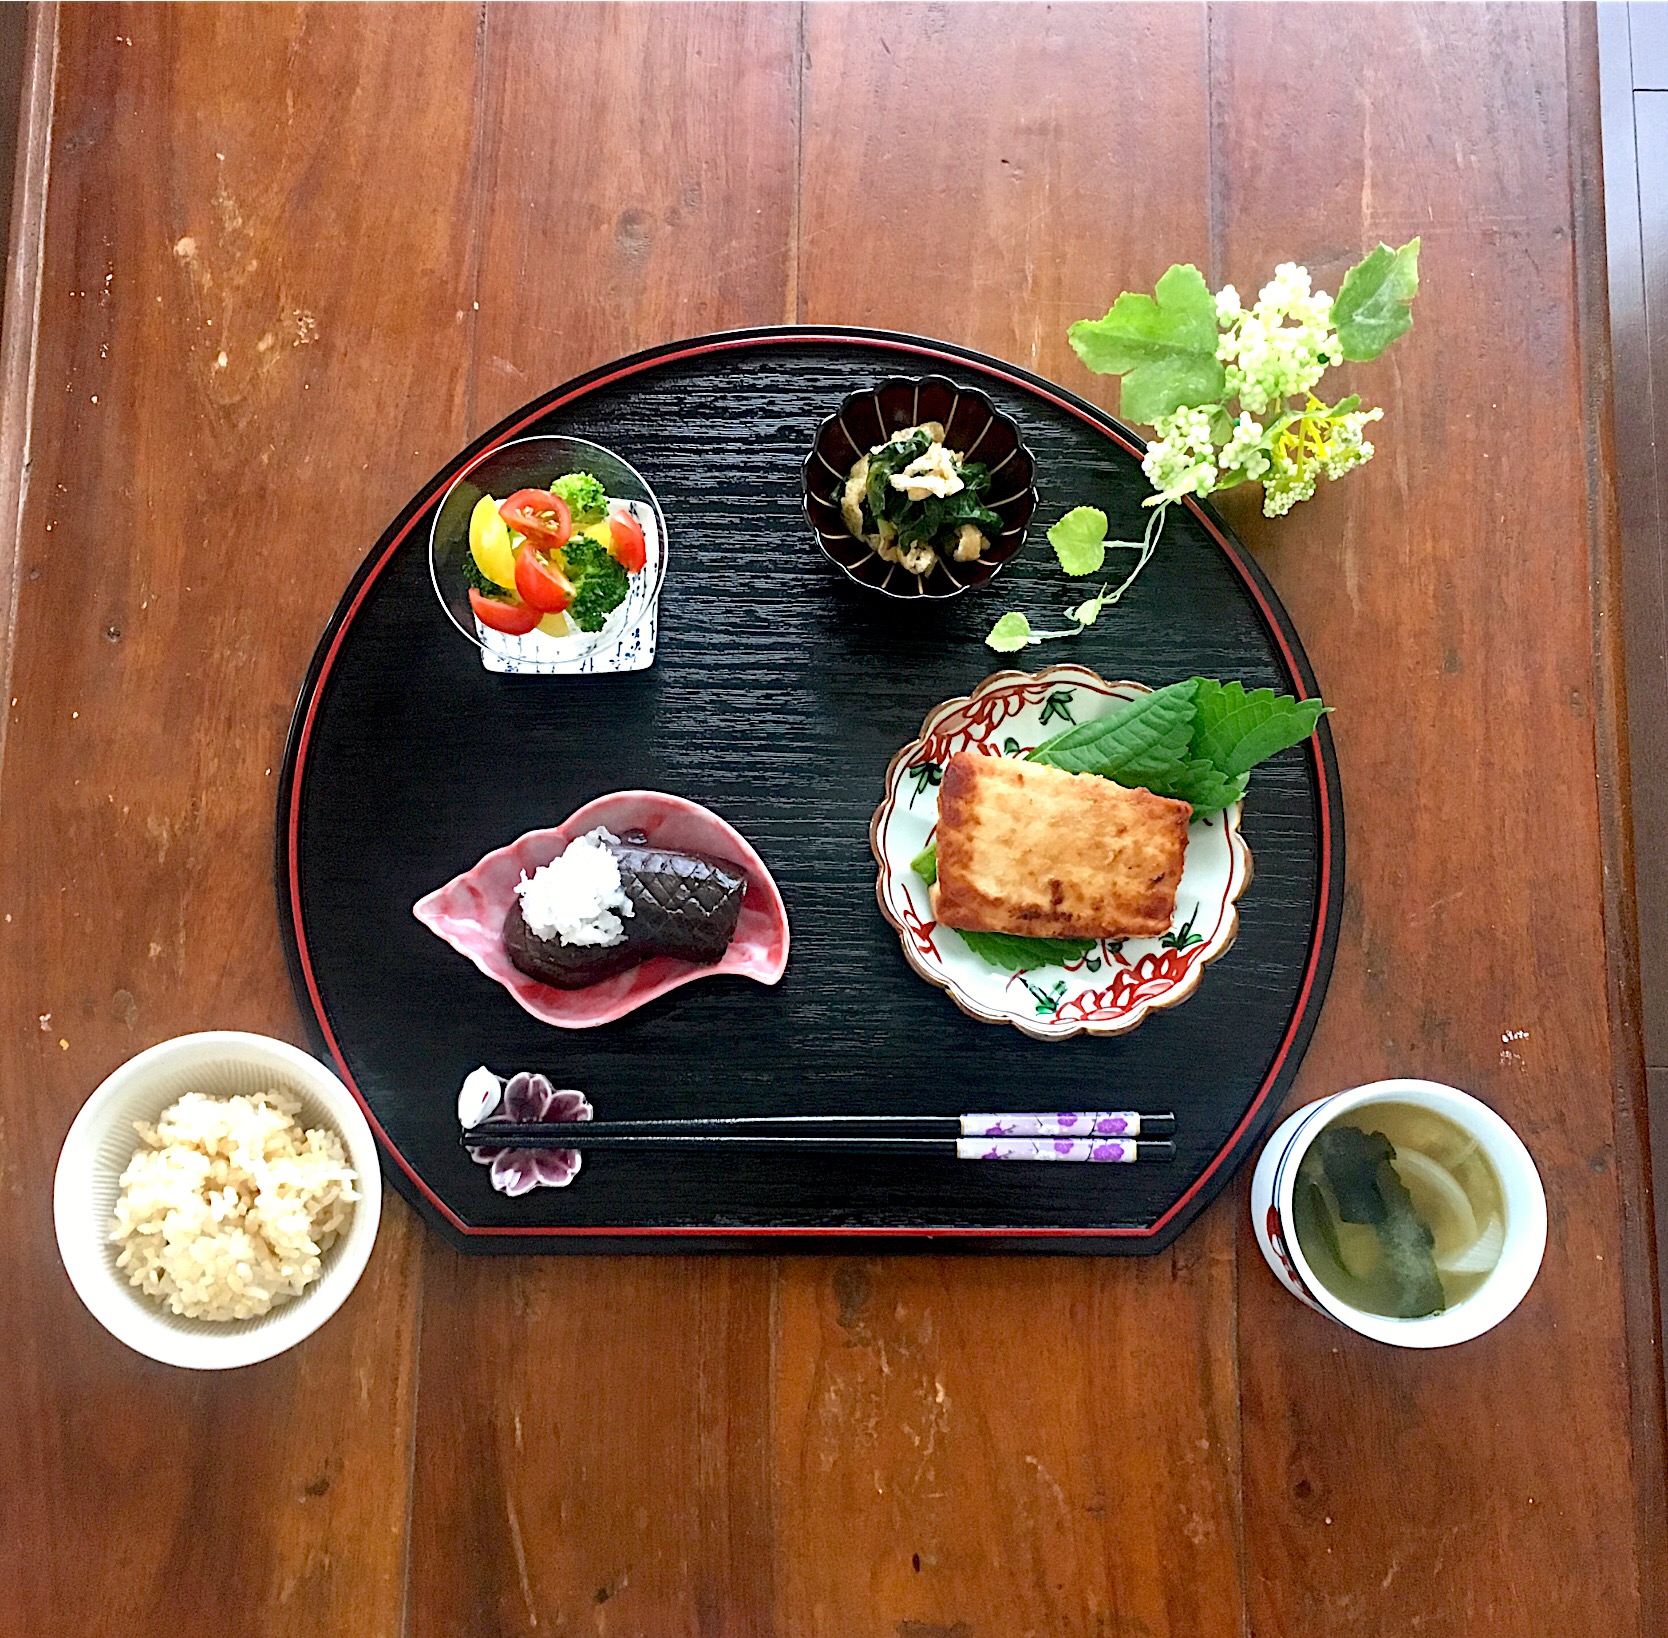 お昼ご飯 ダイエット料理グランプリ2019 ヤマサ醤油株式会社